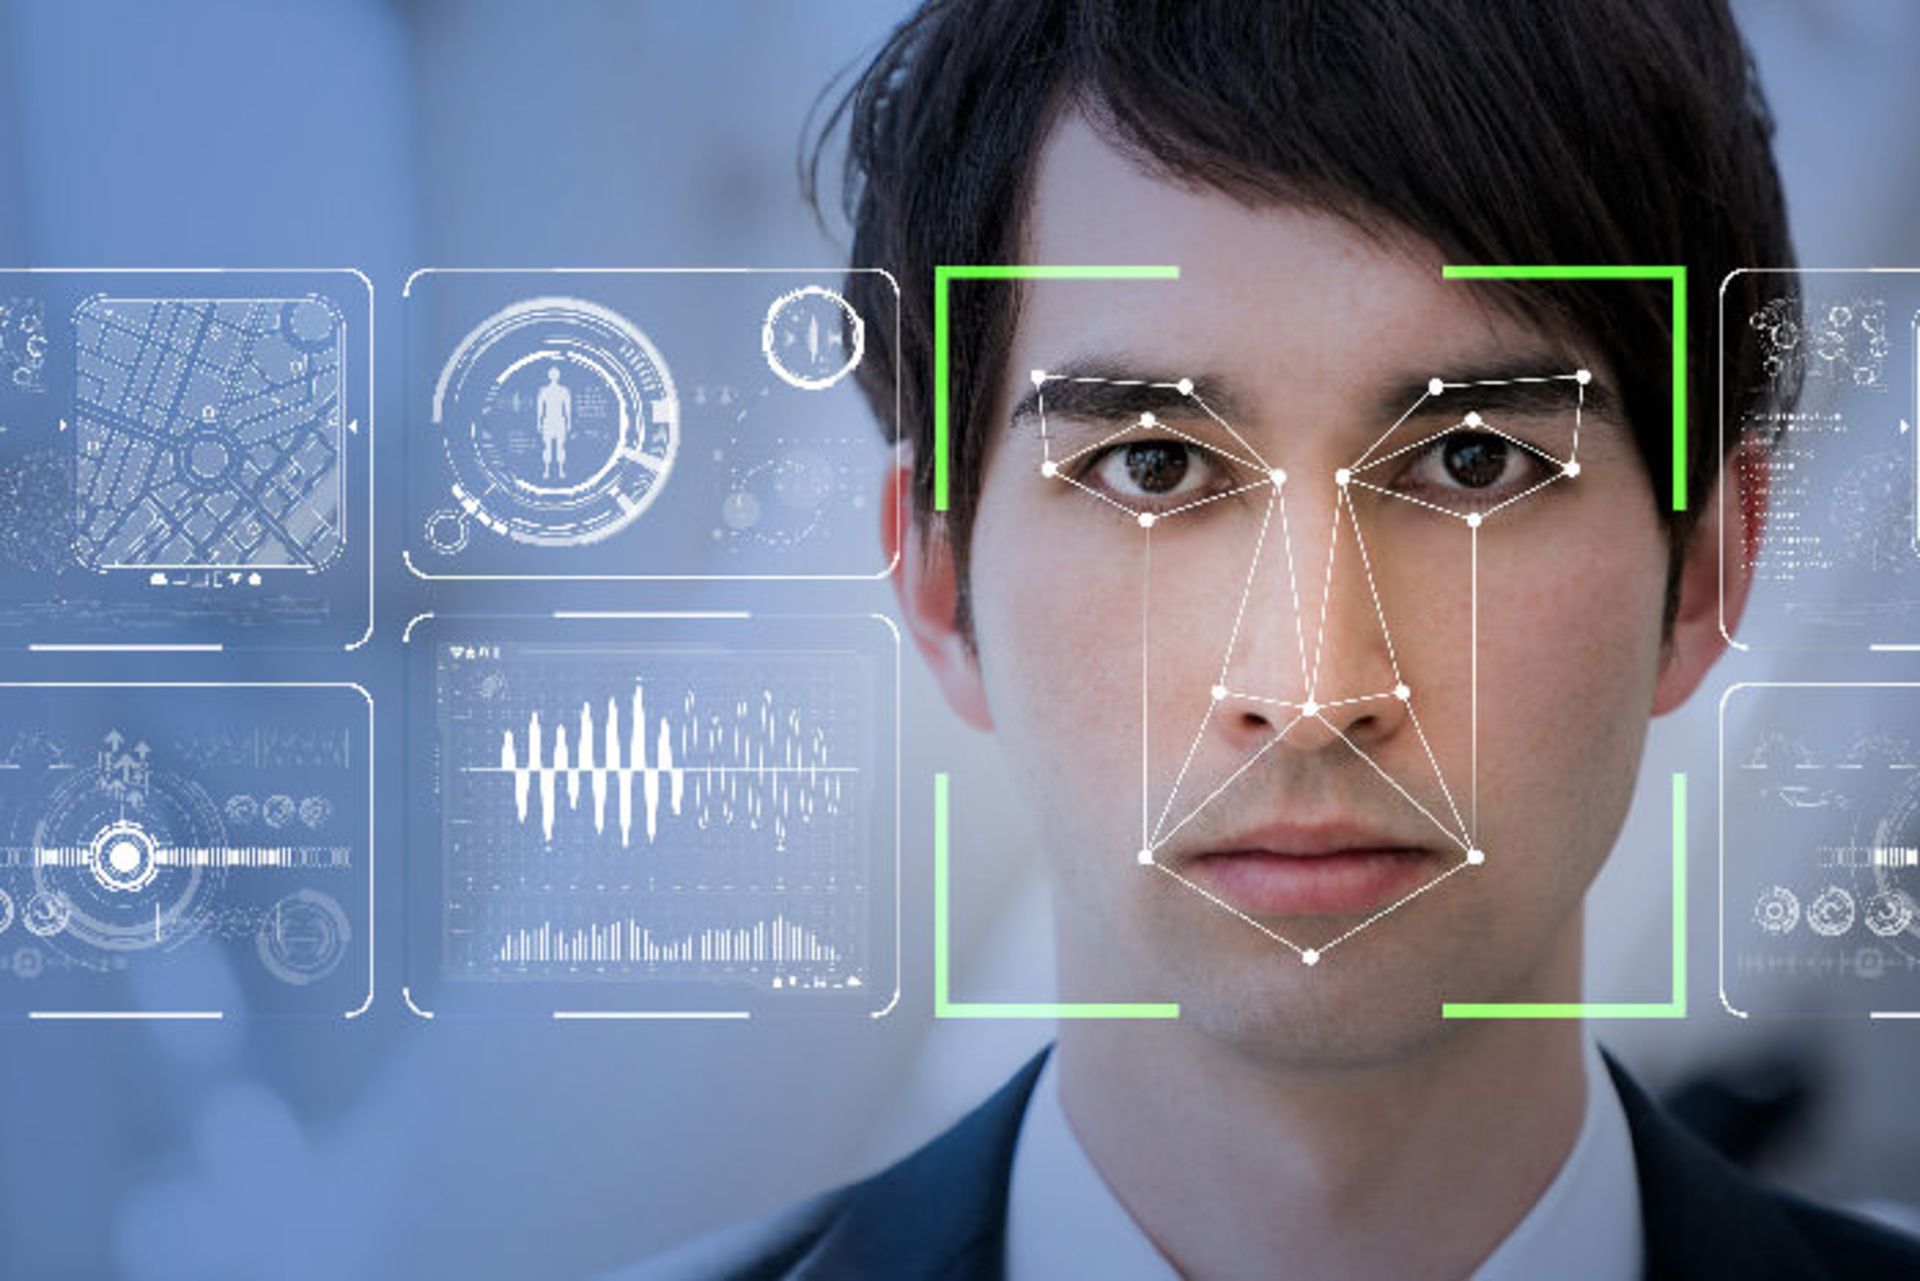 مرجع متخصصين ايران تشخيص چهره / face recognition